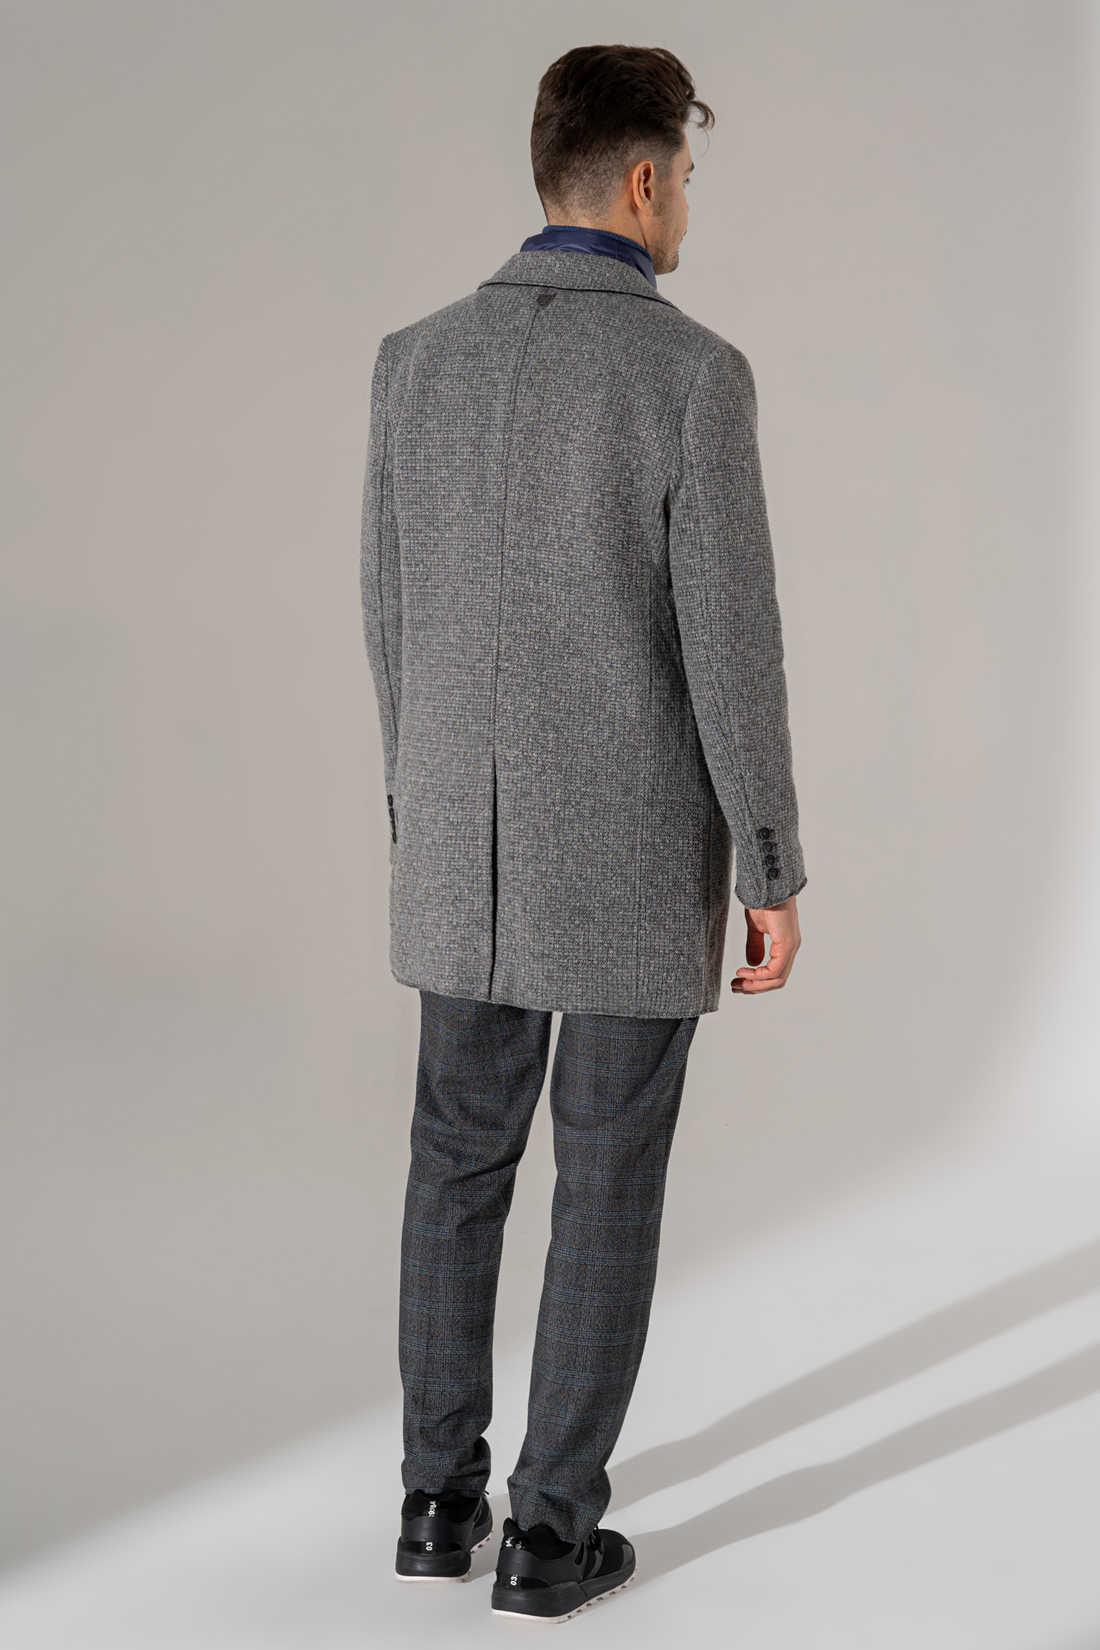 Серое пальто с шерстью (арт. baon B569502), размер XXL, цвет deep grey melange#серый Серое пальто с шерстью (арт. baon B569502) - фото 2